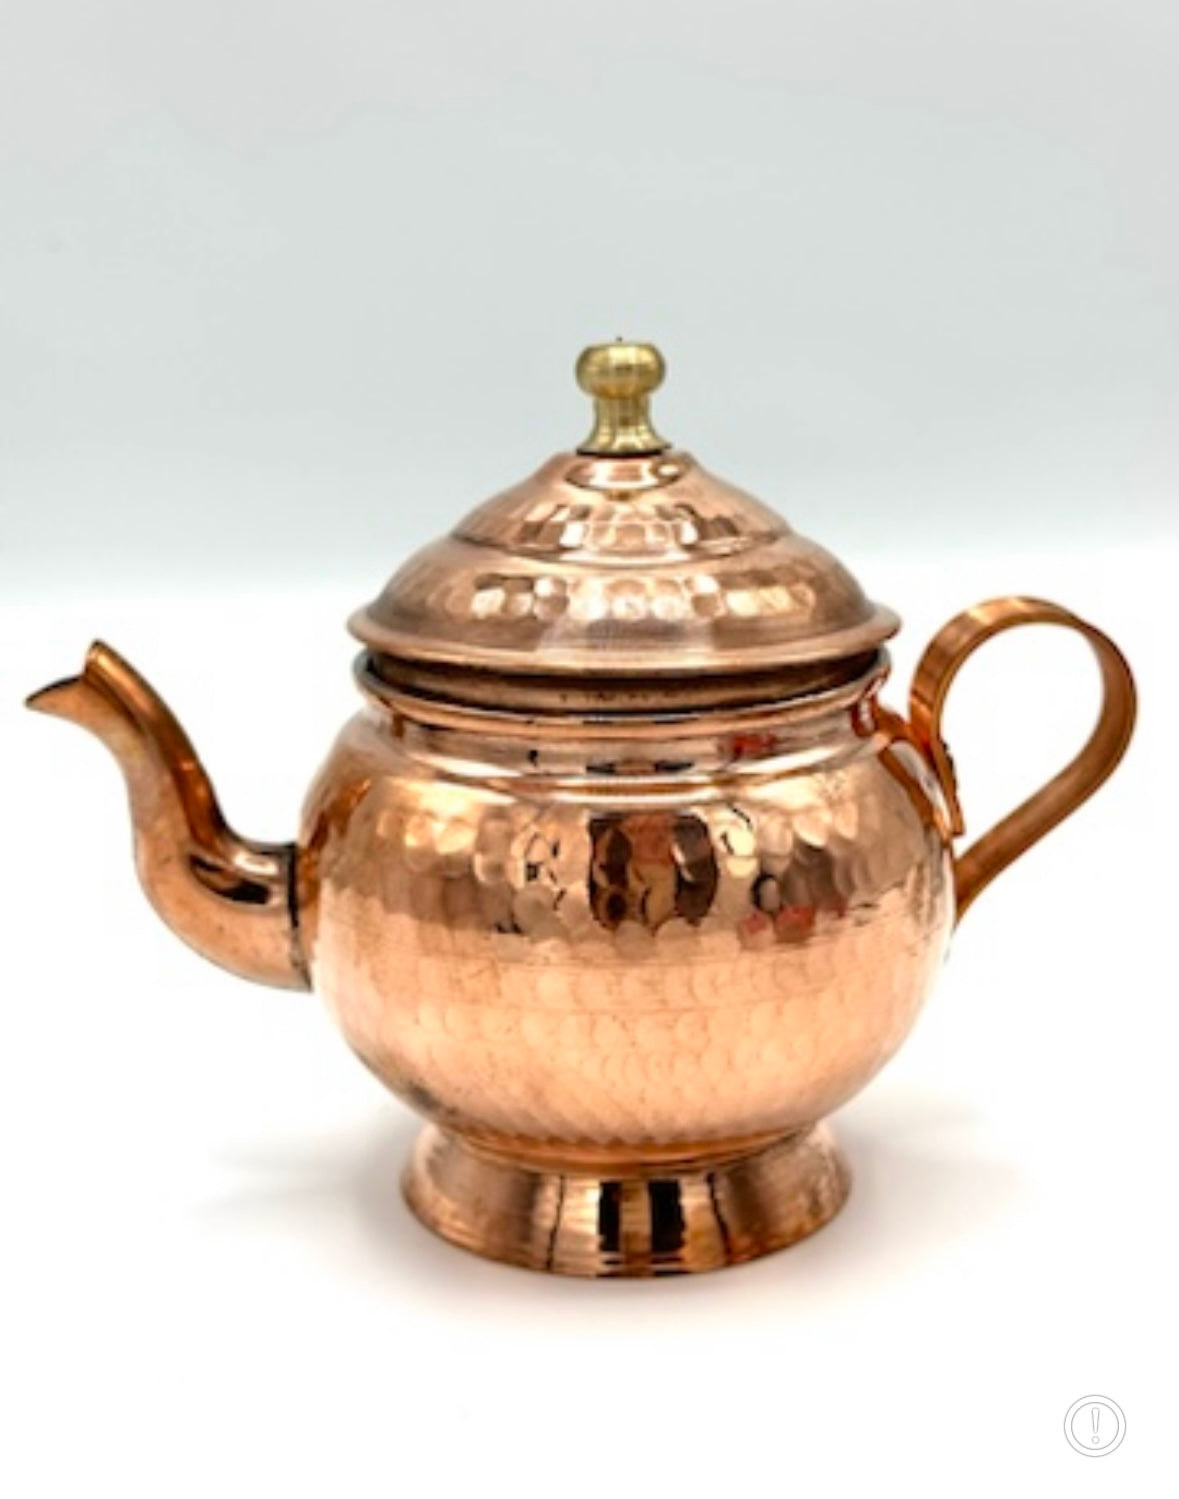 Mini Copper teapot to brew saffron